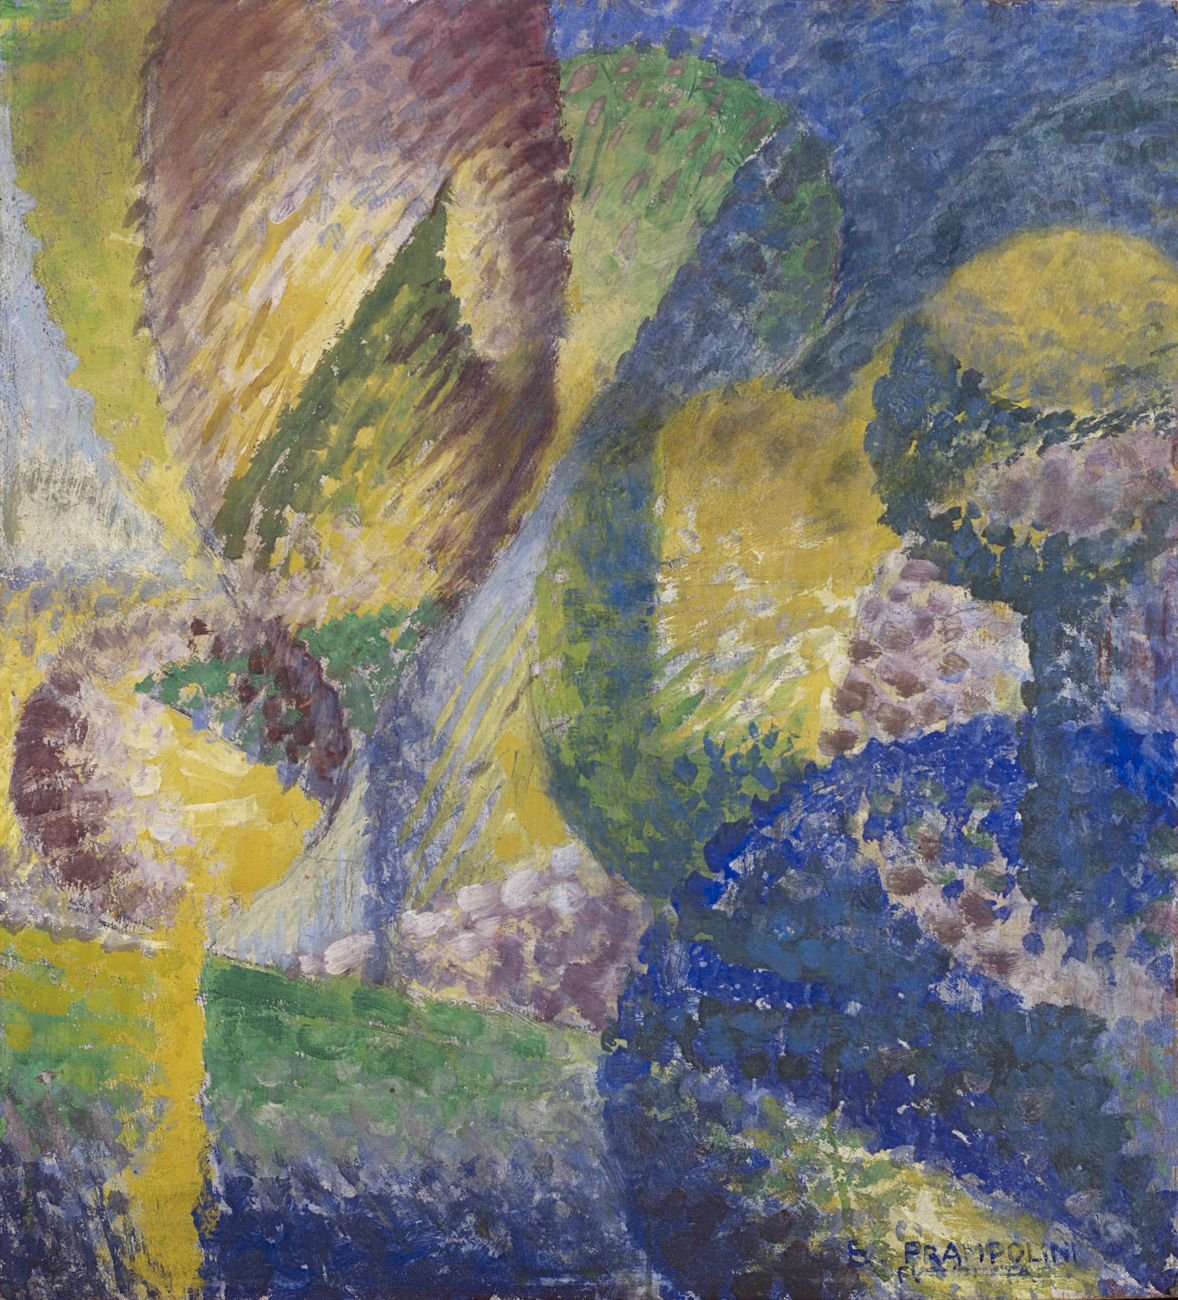 Enrico Prampolini, Sensazione cromatica di giardino, 1914. Courtesy Il Ponte